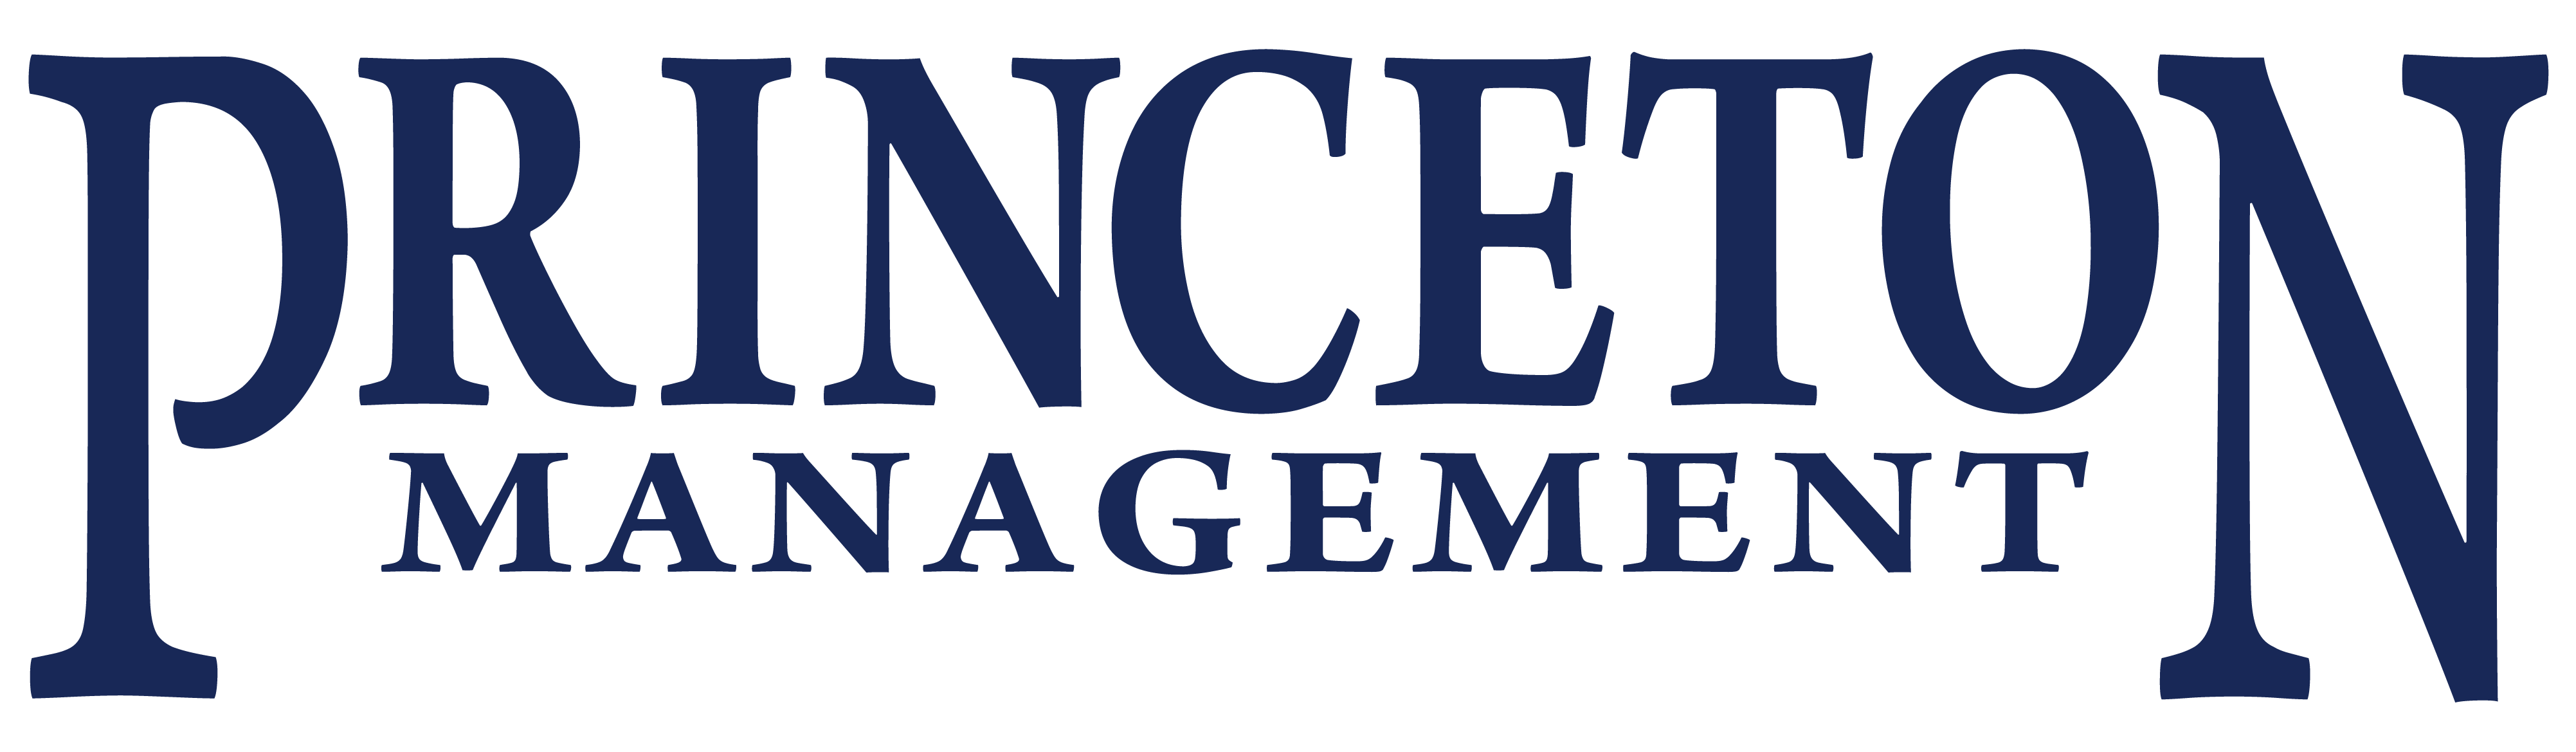 Princeton Management Logo